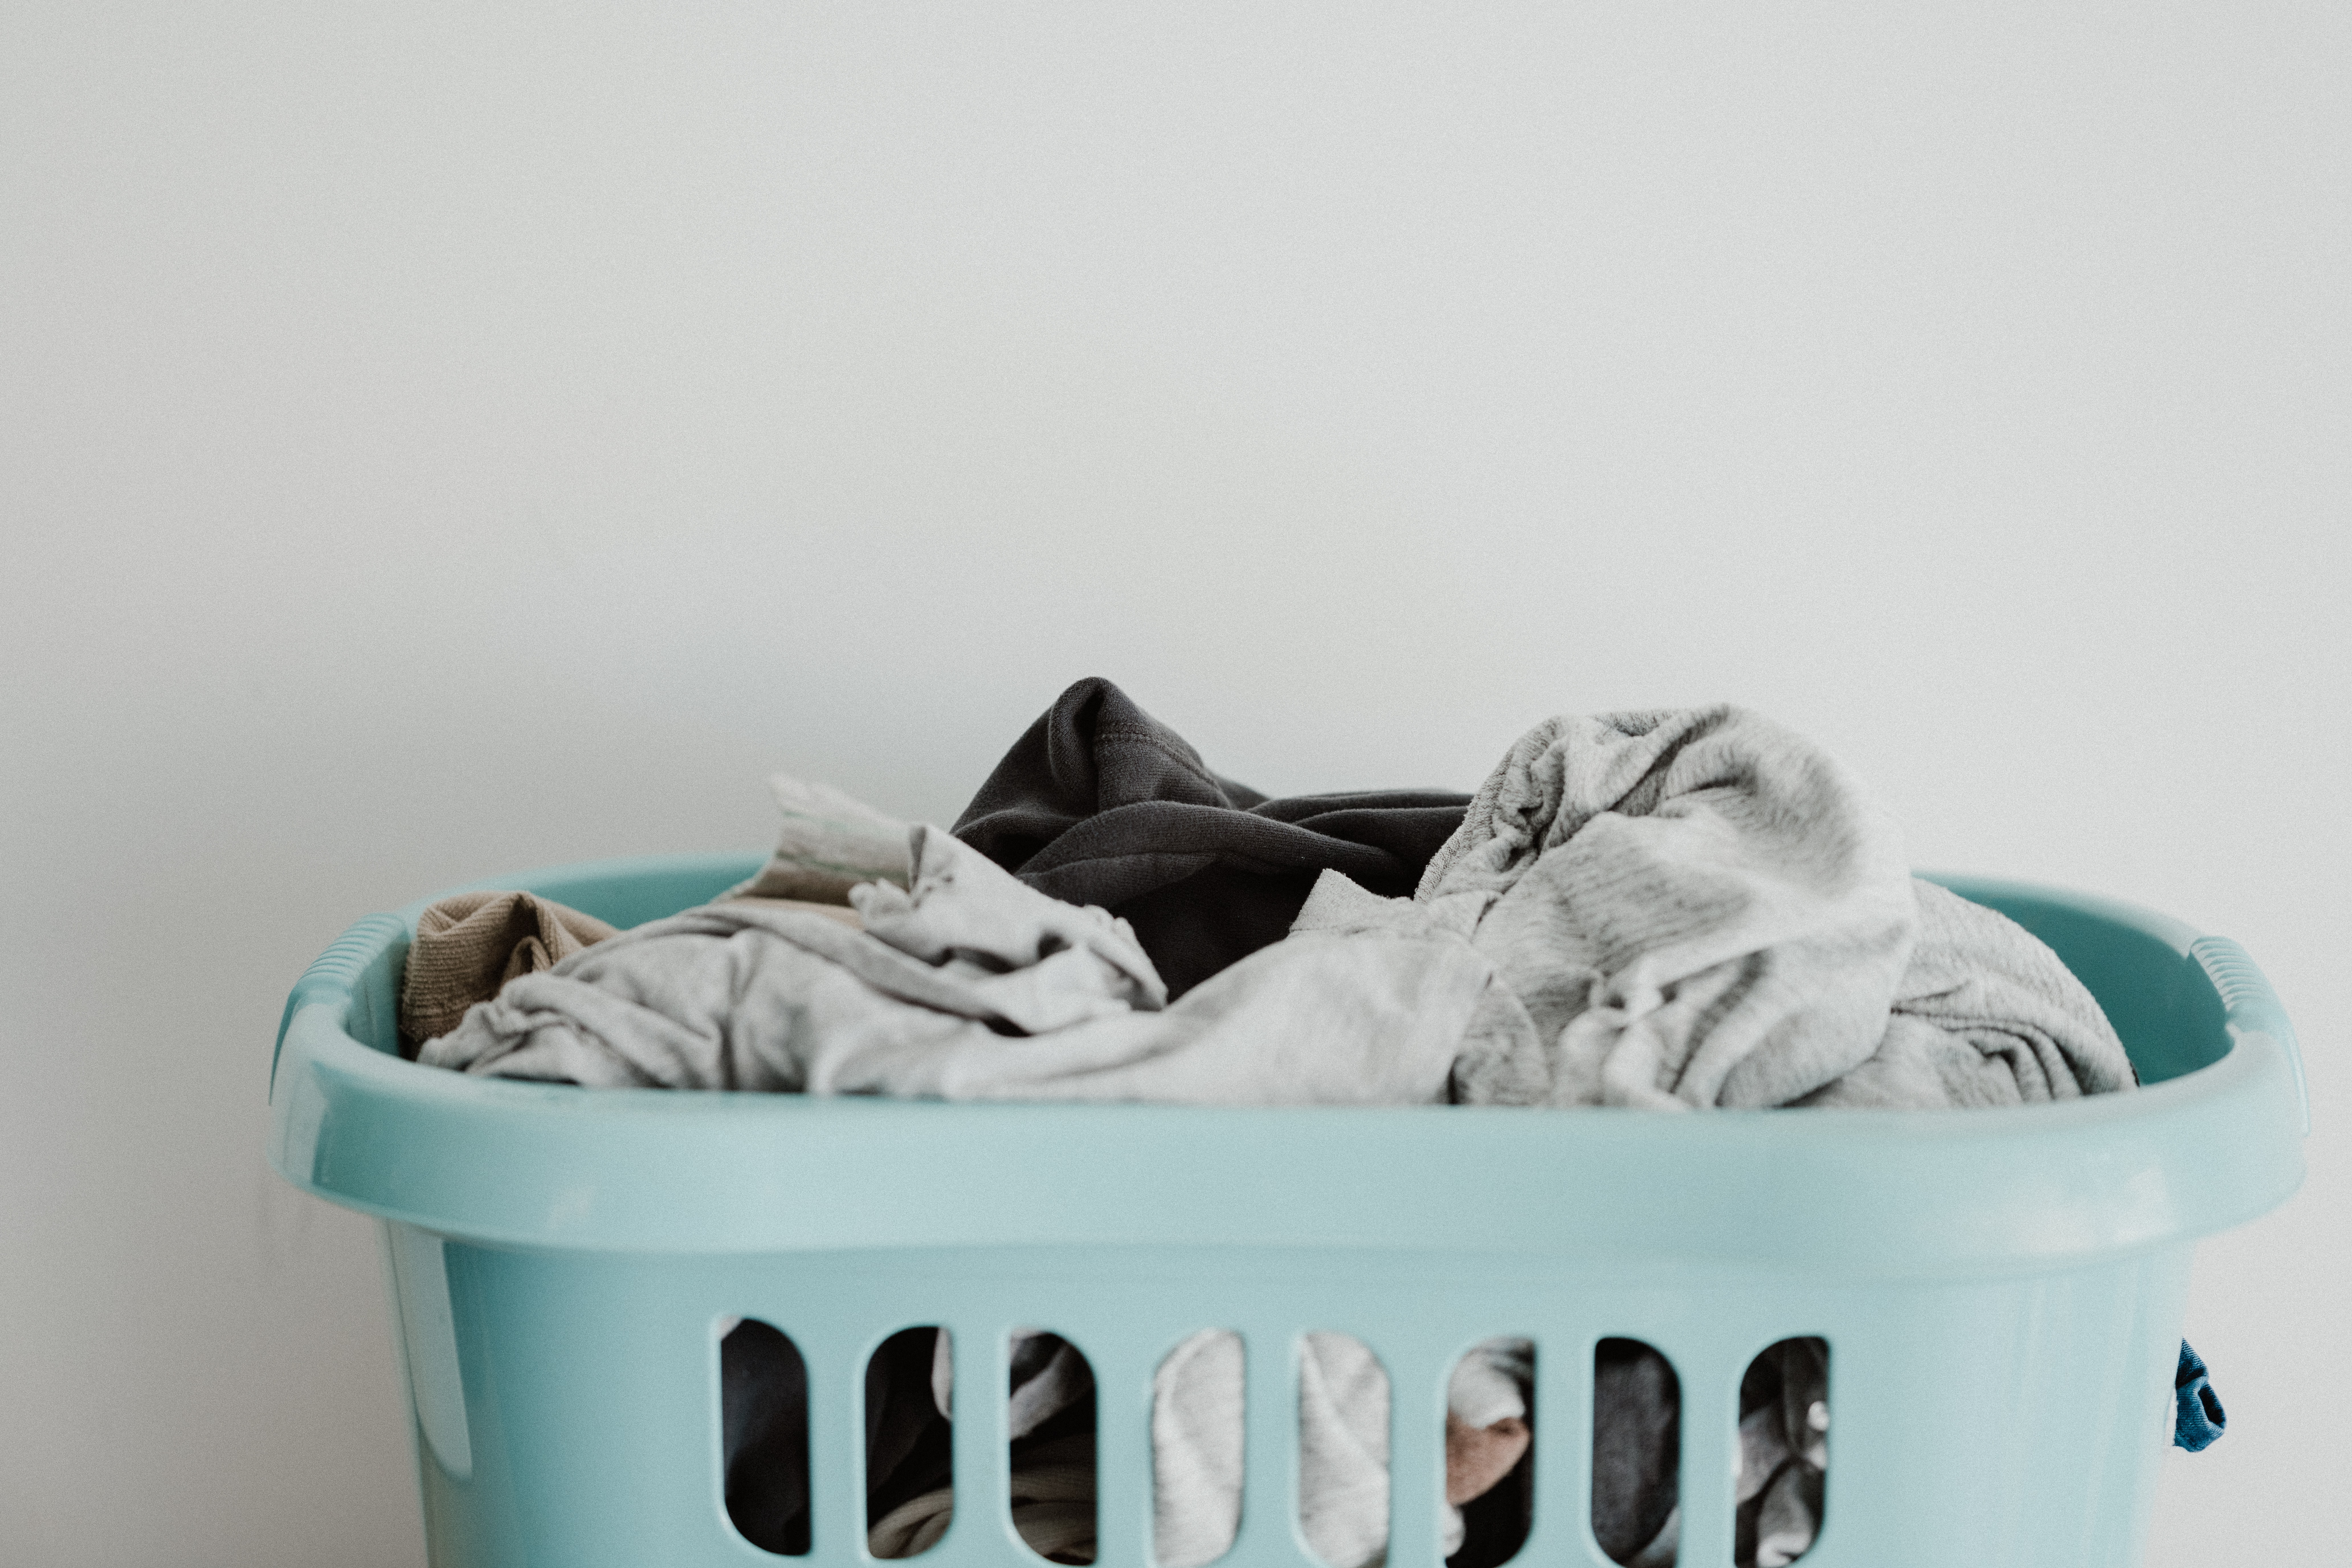 eco-friendly laundry